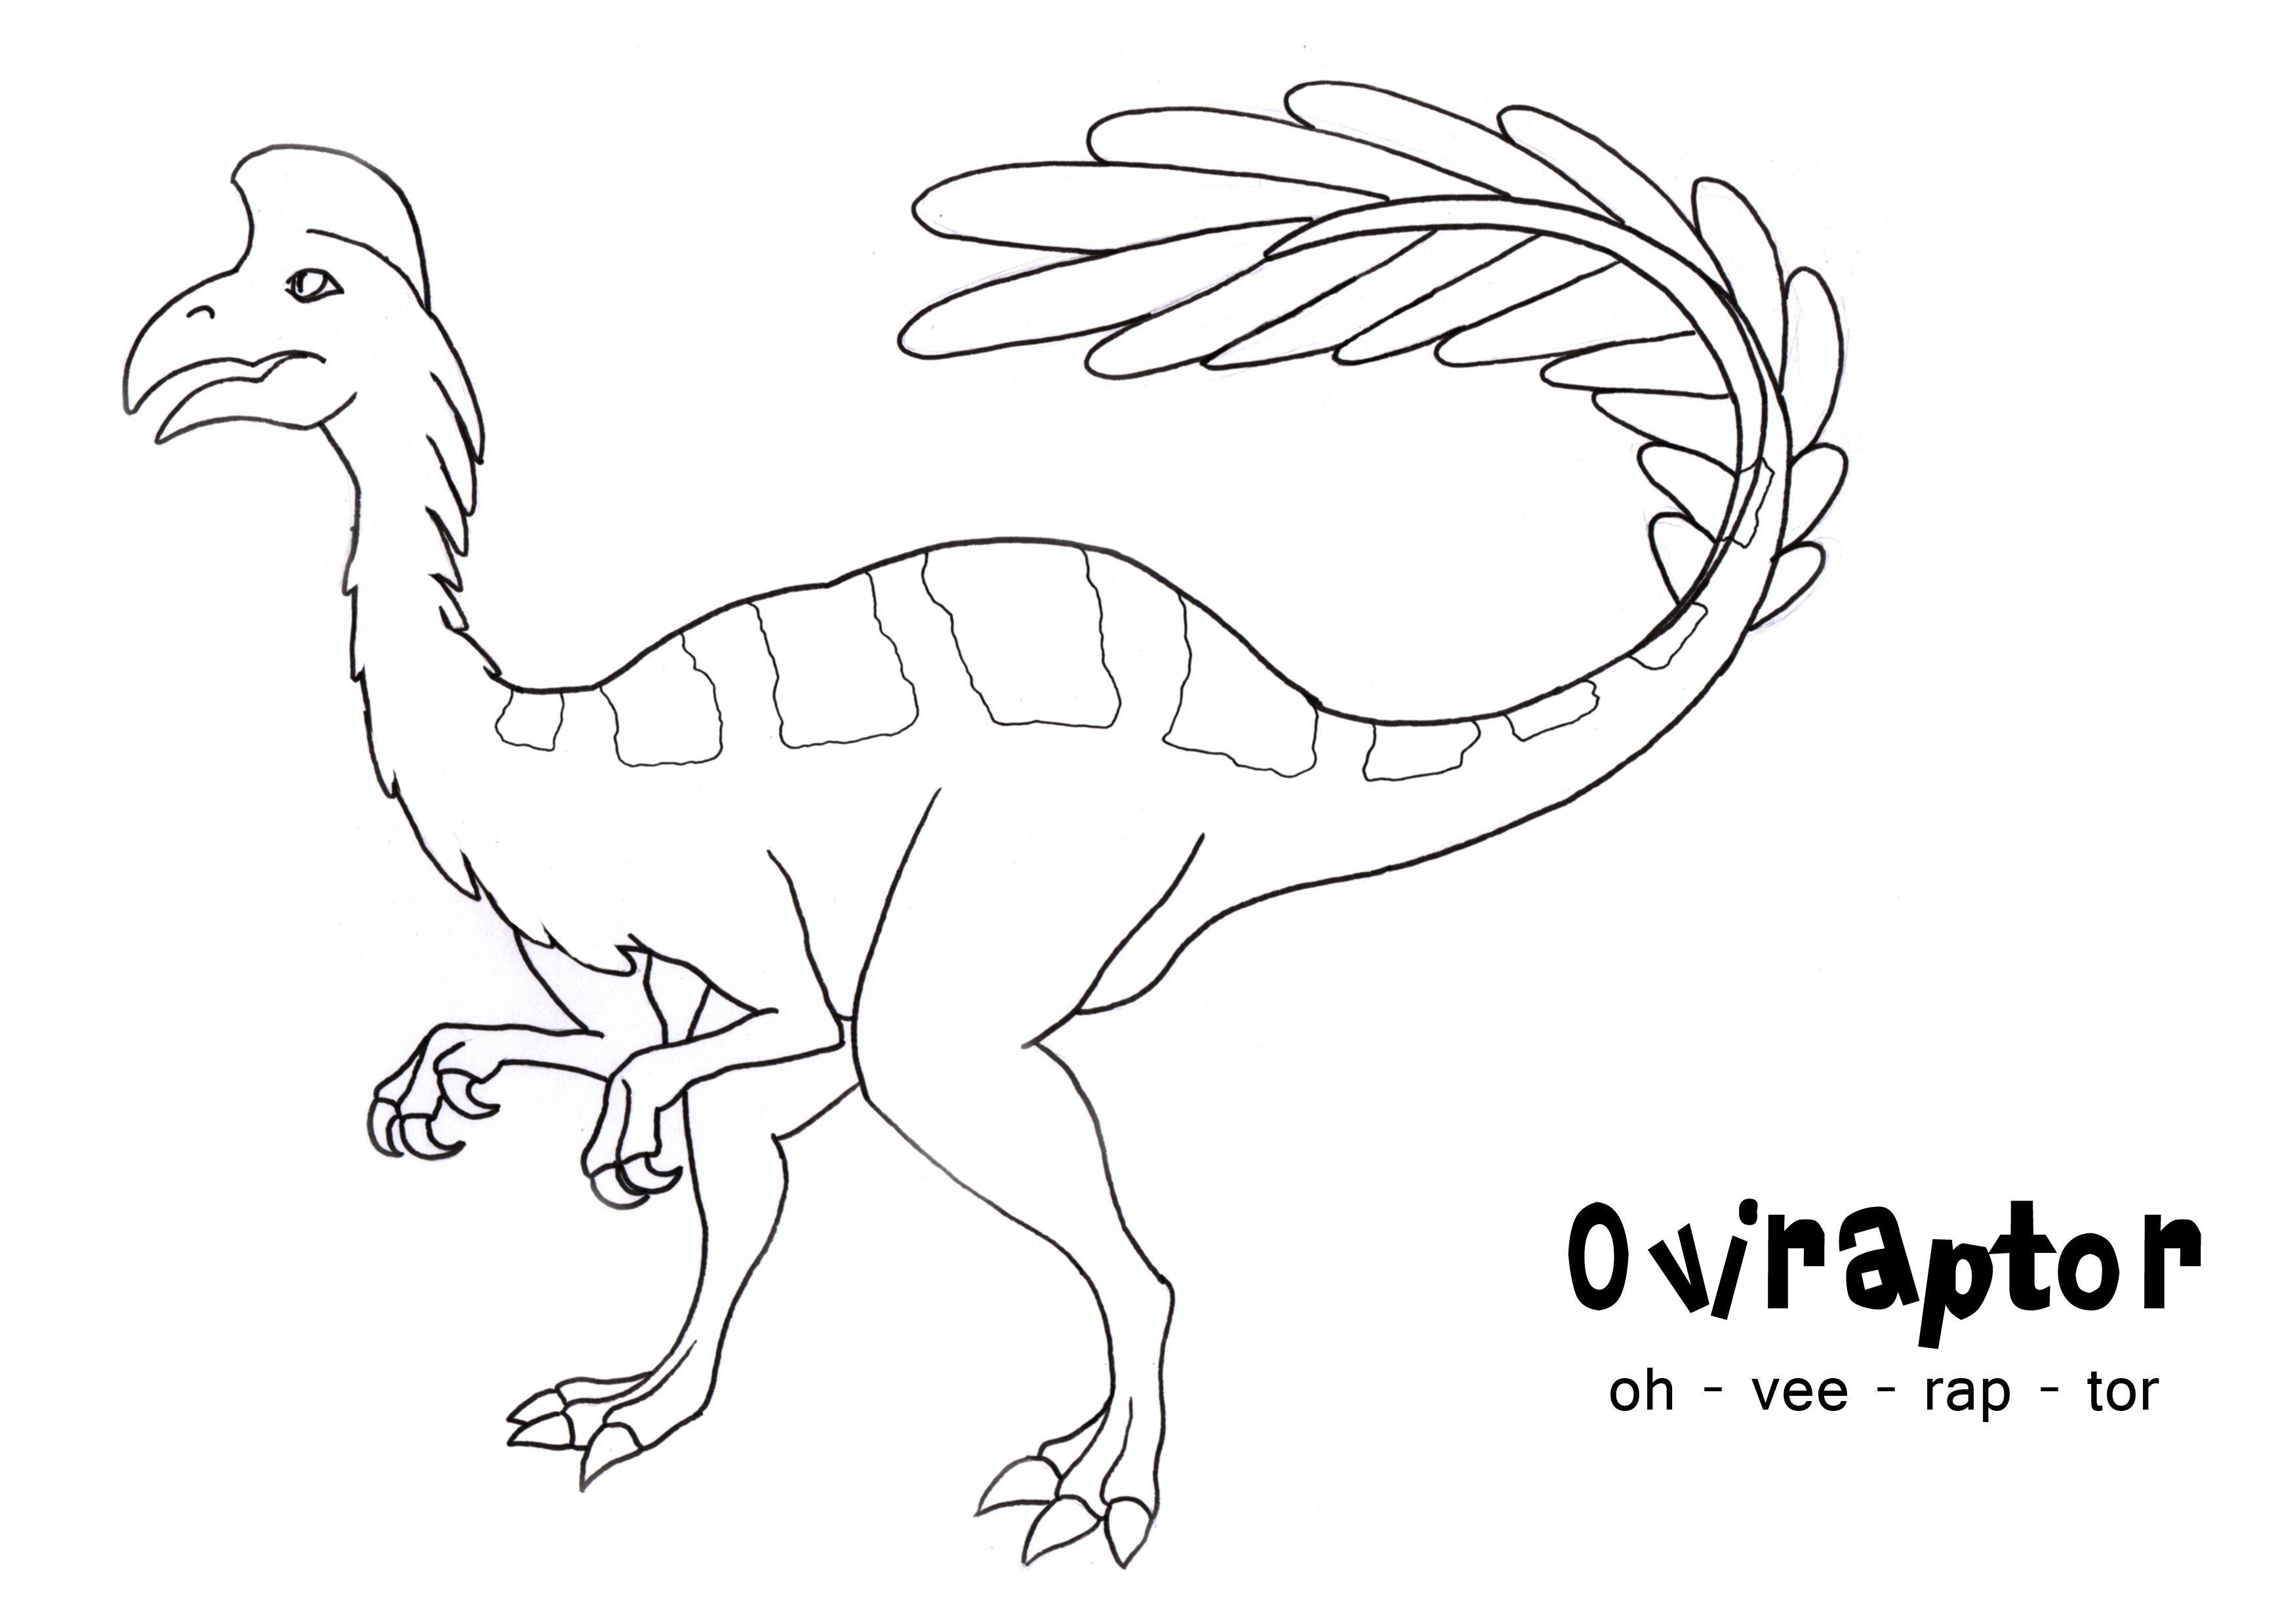 أوفيرابتور هو جنس من الديناصورات الريشية من نوع الأركيوبتركس من نوع الأركيوبتركس